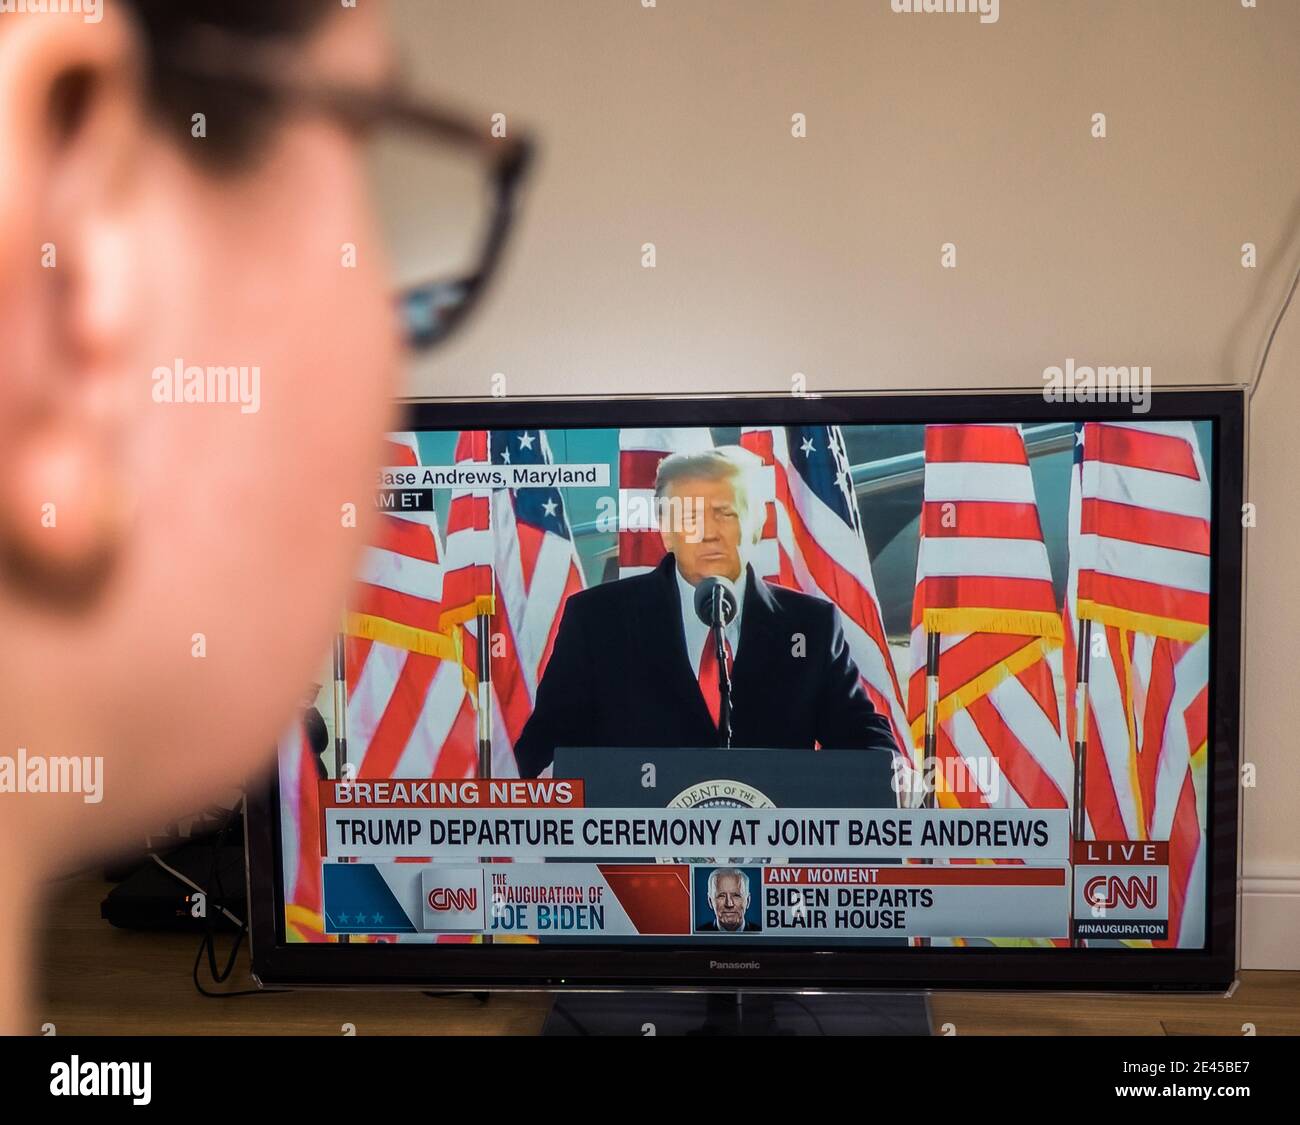 Paris, Frankreich - 20. Jan 2021: POV-Frau schaut auf lcd-tv die Nachrichten von CNN mit Donald Trump Abfahrt Zeremonie in Joint Base Andrews Stockfoto